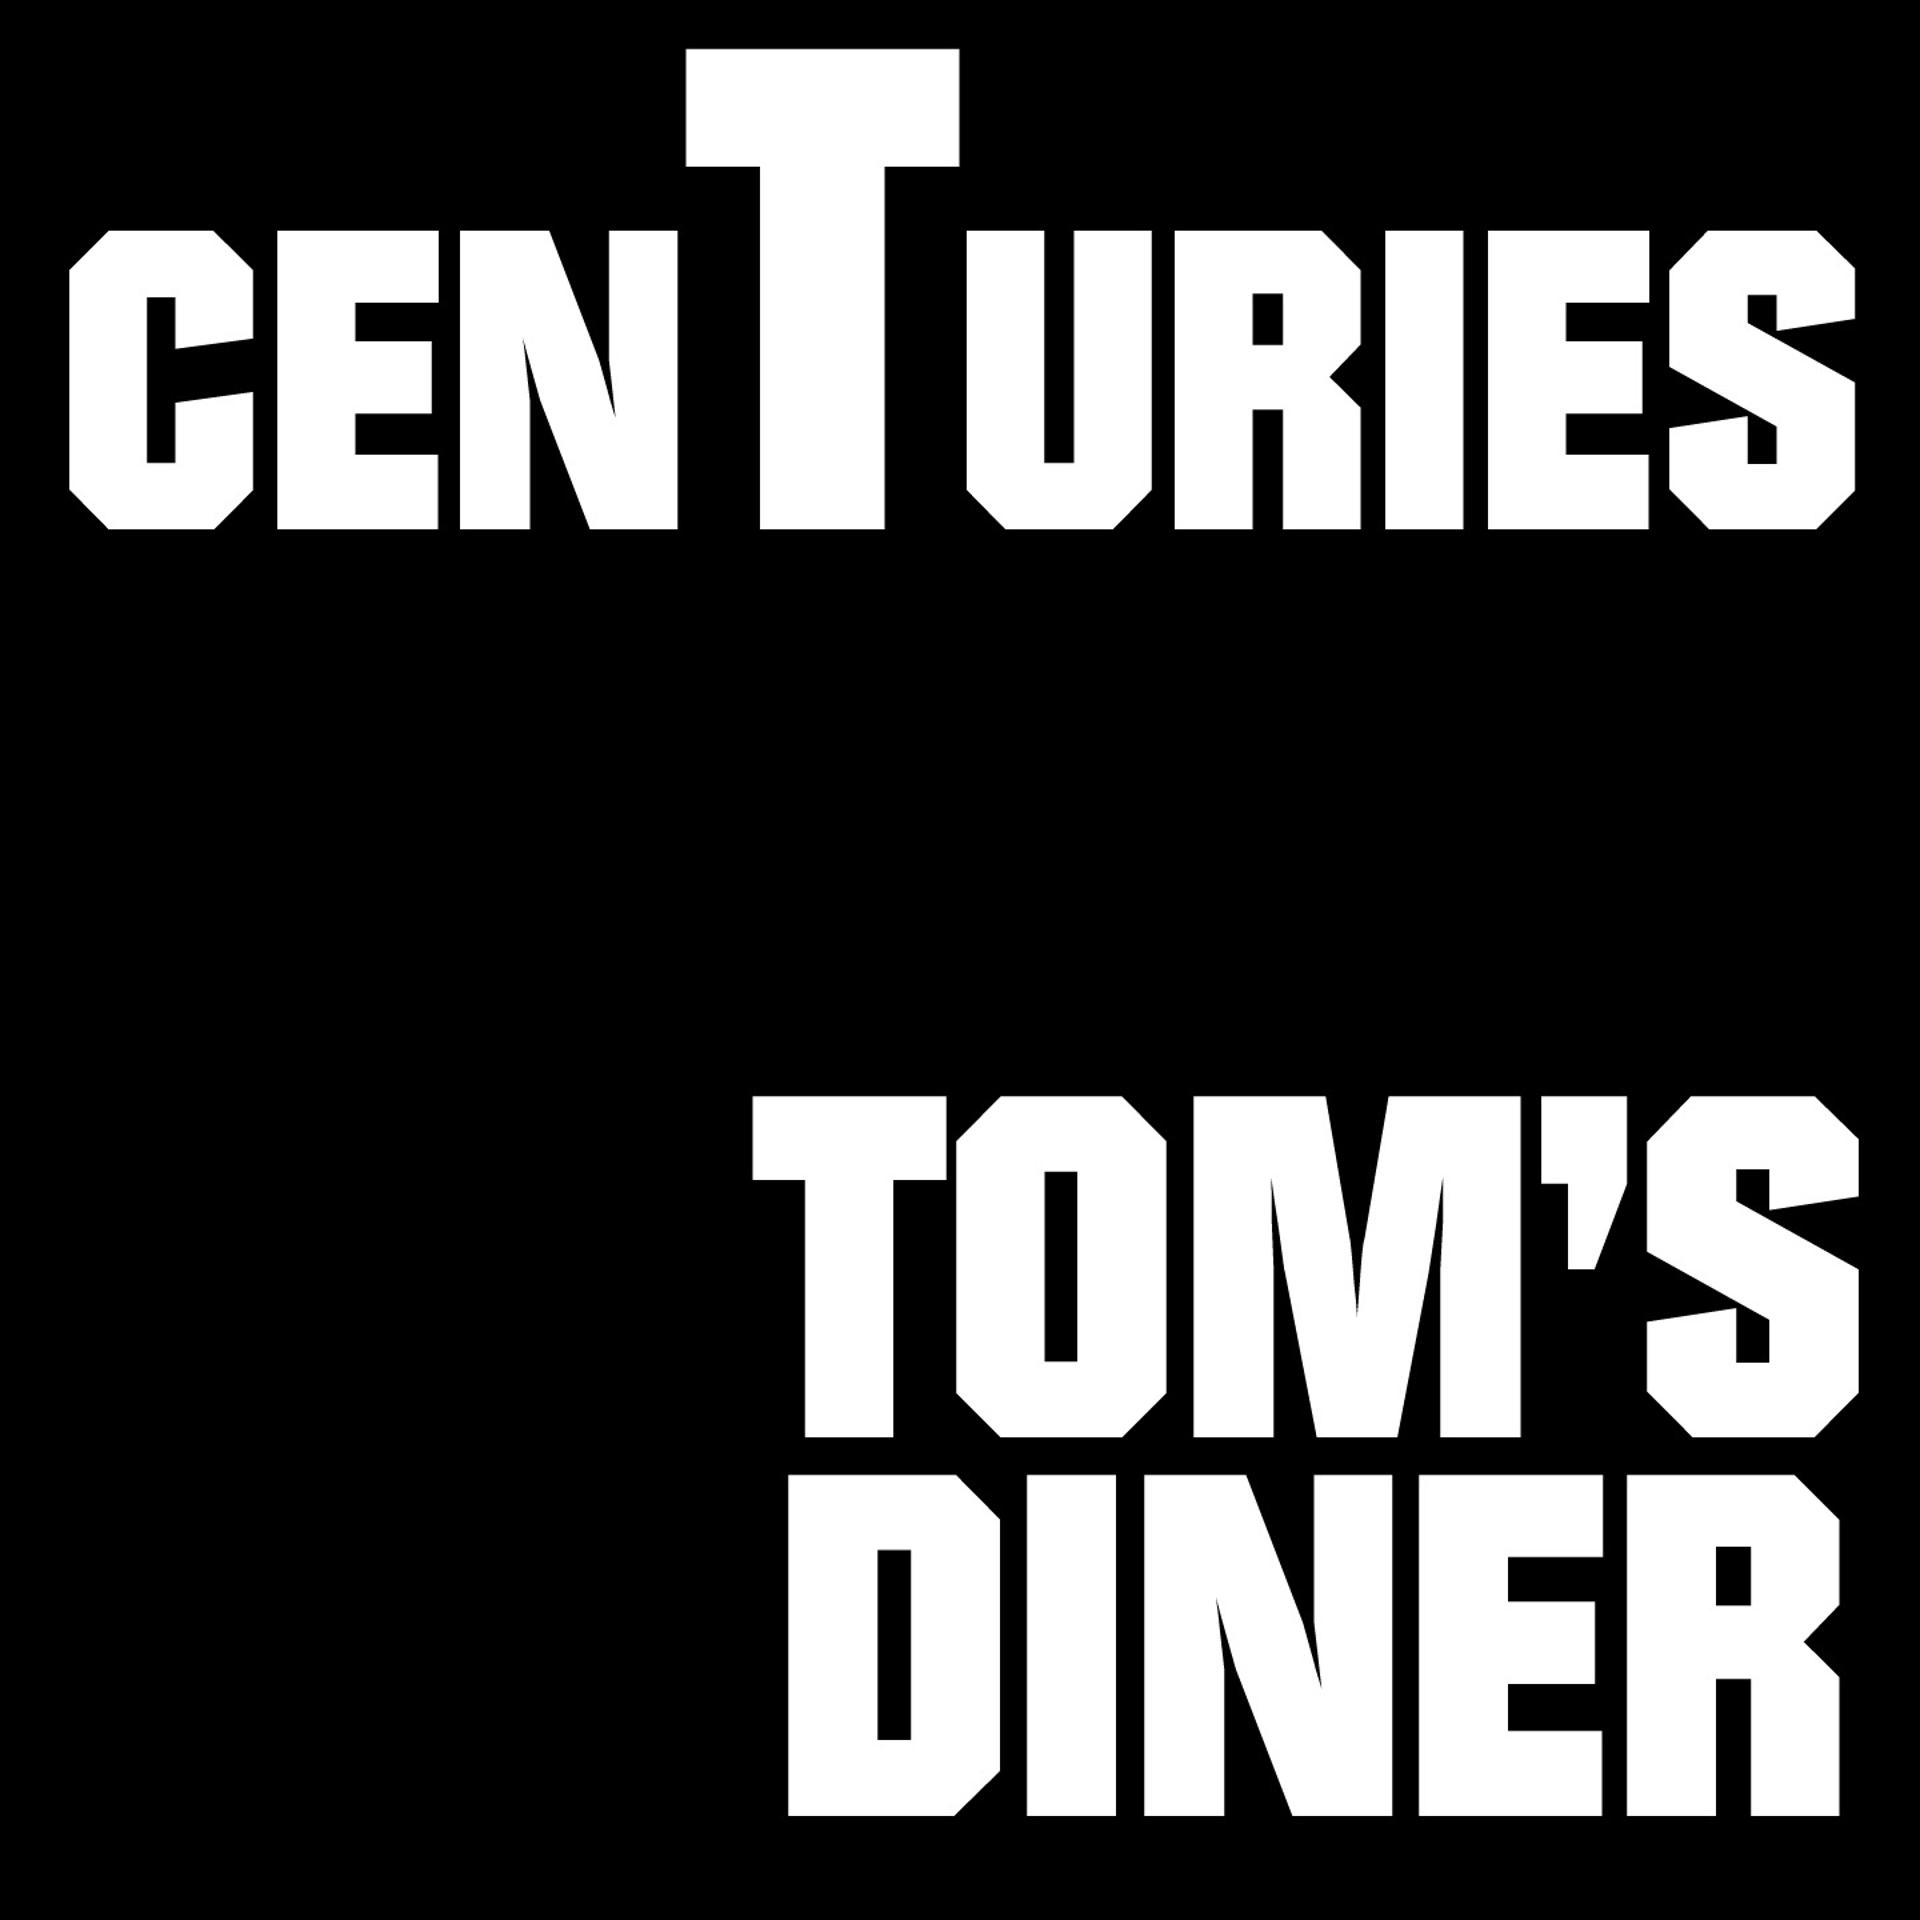 Tom's Diner и Centuries. Tom's Diner песня. Томс Динер текст. Томс Динер слушать.